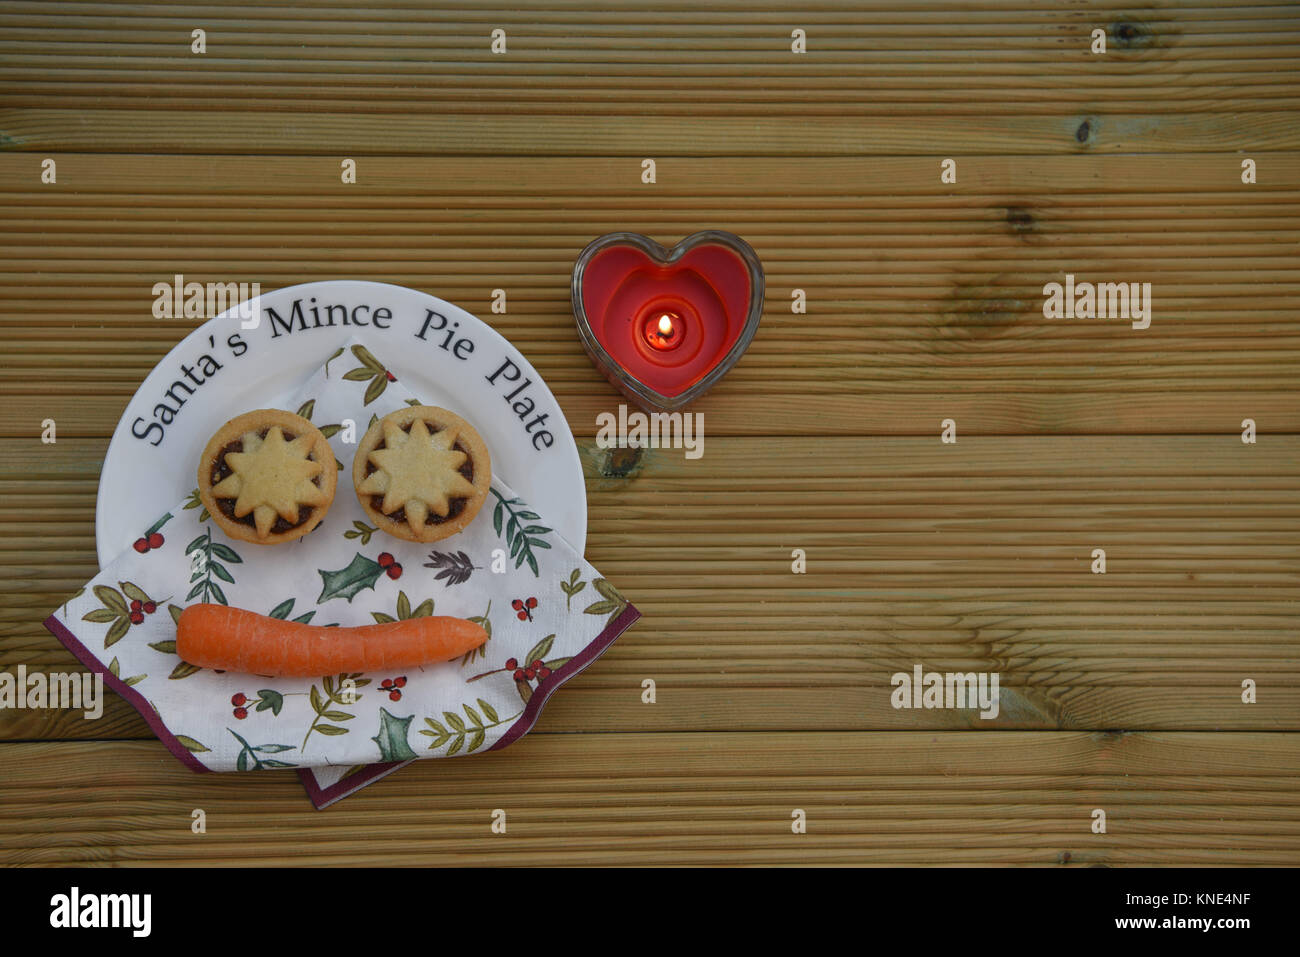 Weihnachten essen Fotografie Bild mit Santa Torte Platte und orange Karotte für das Rentier mit Liebe Herz mince auf Holz Hintergrund Kerze Stockfoto